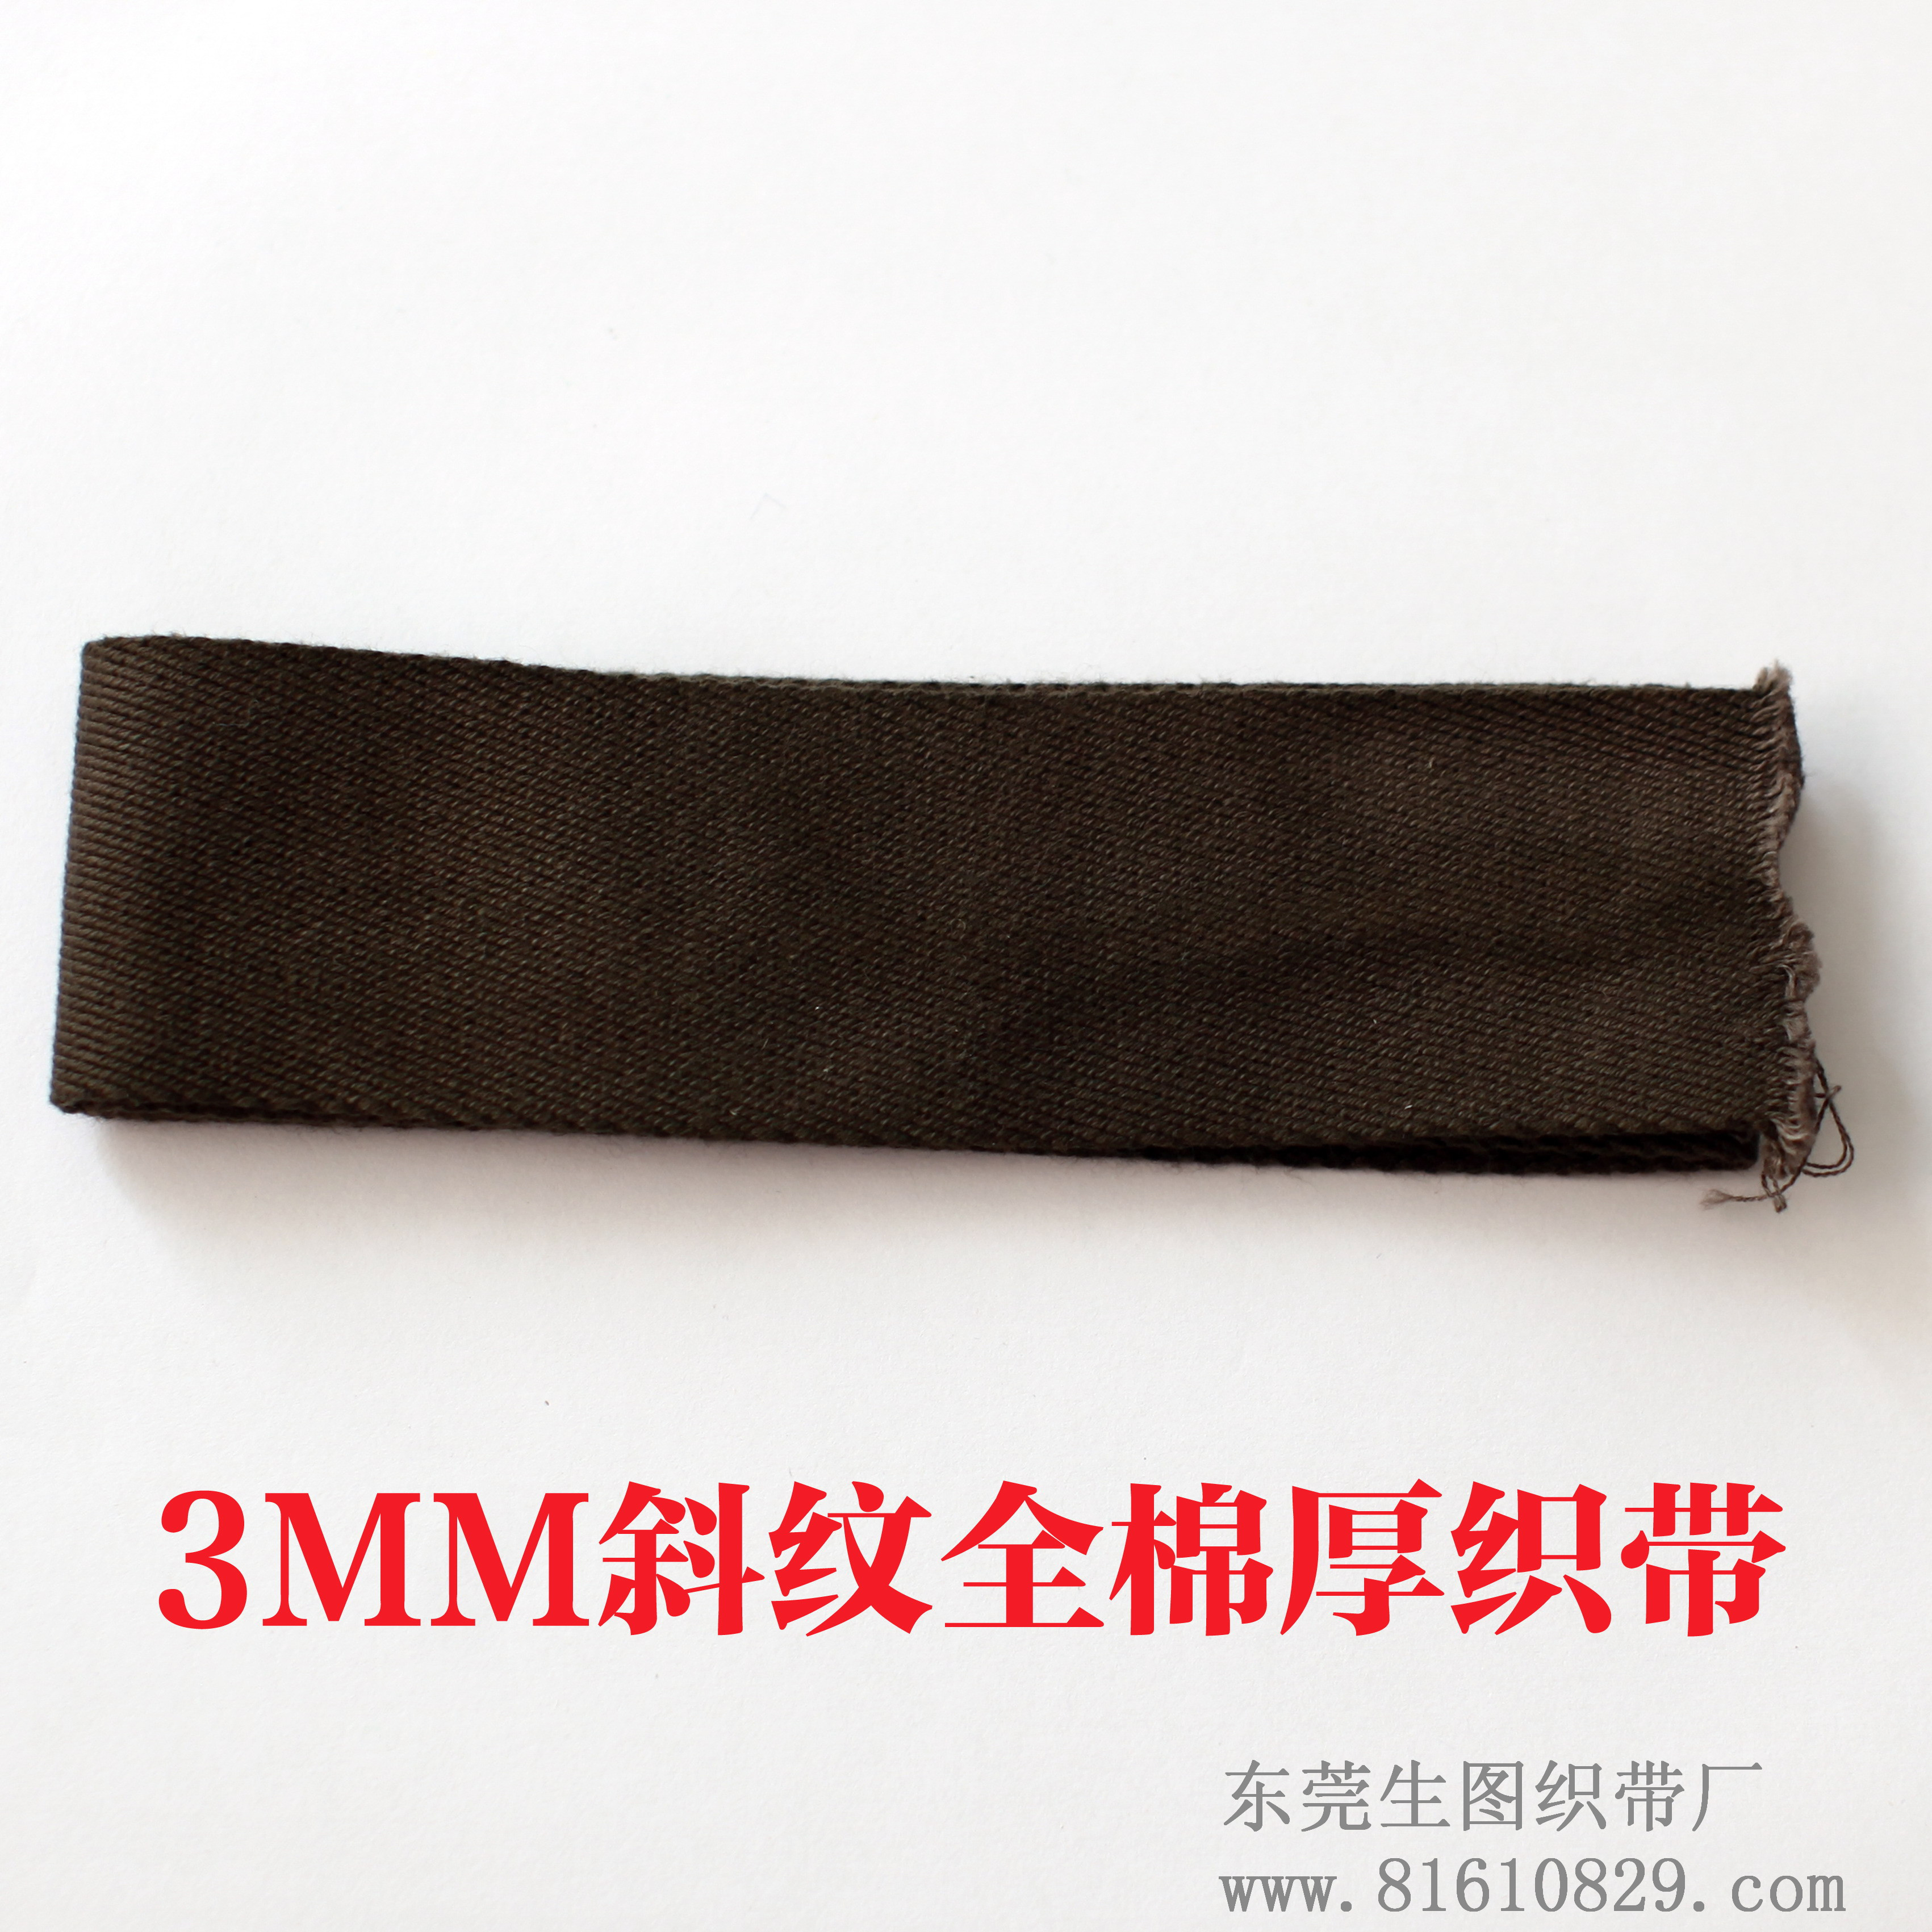 专业订做加厚全棉斜纹织带 服装辅料织带生产厂家